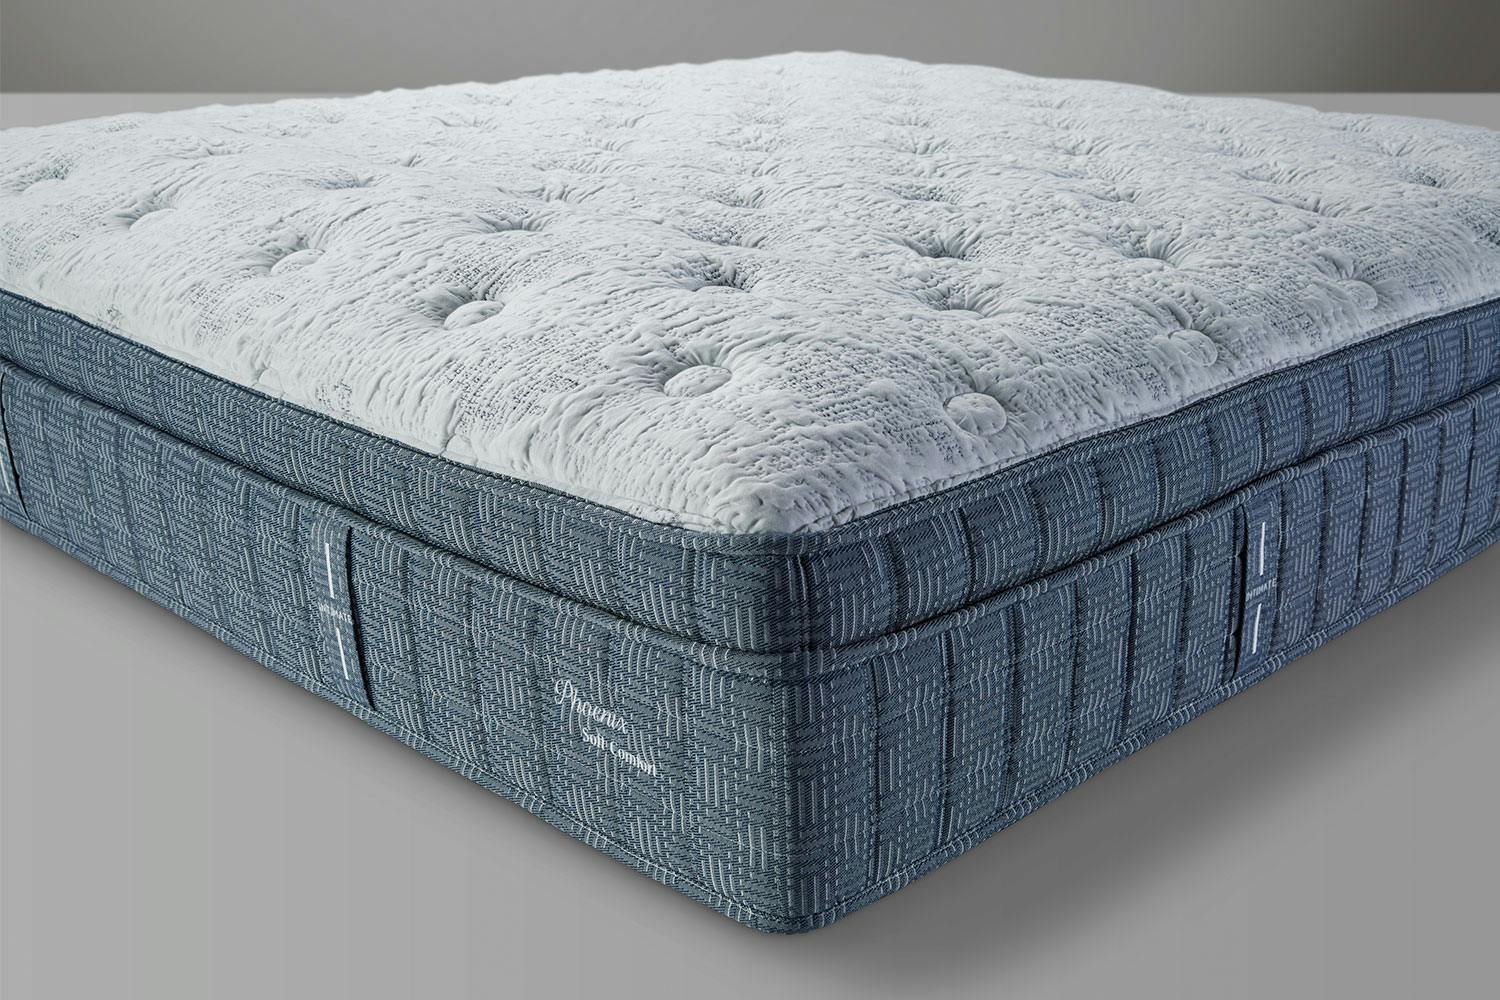 soft queen mattress canada